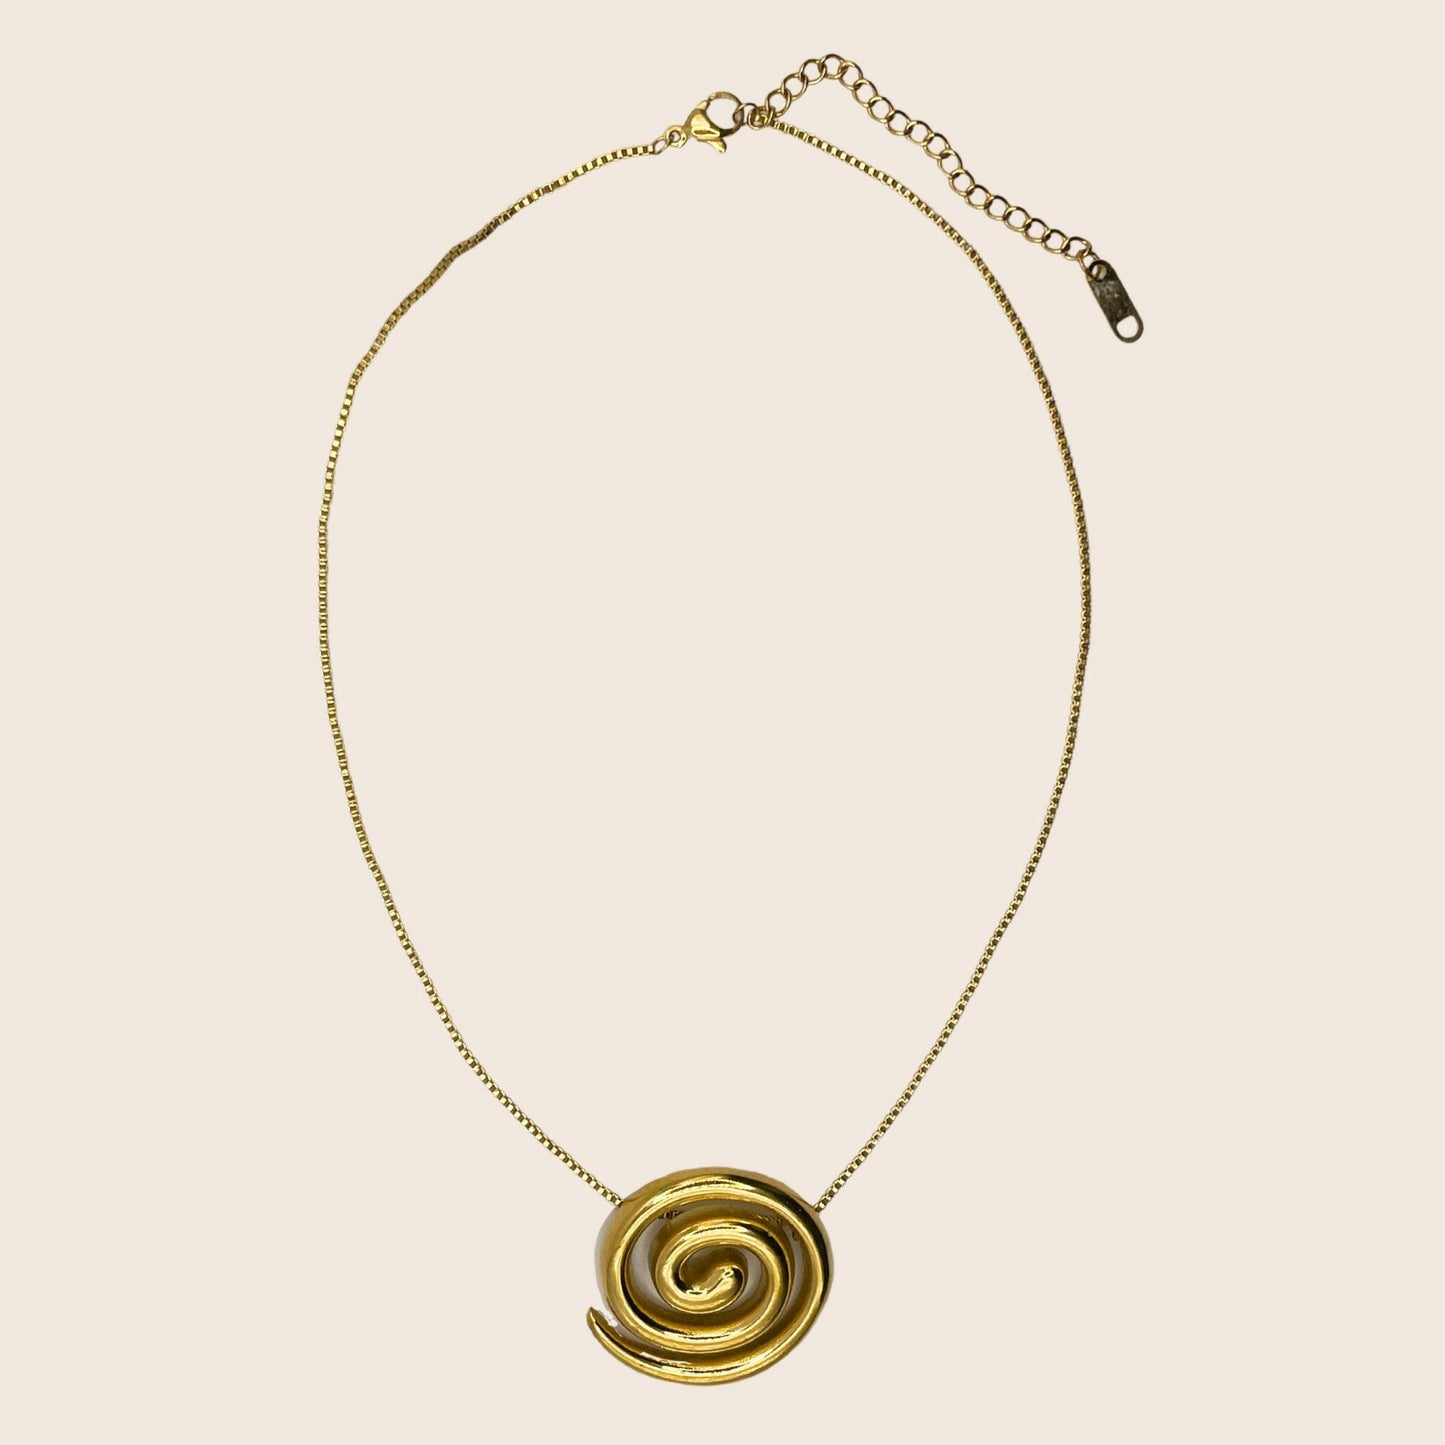 Whirl Necklace - Lemon Lua Whirl Necklace Lemon Lua Lemon Lua Whirl Necklace Whirl Necklace